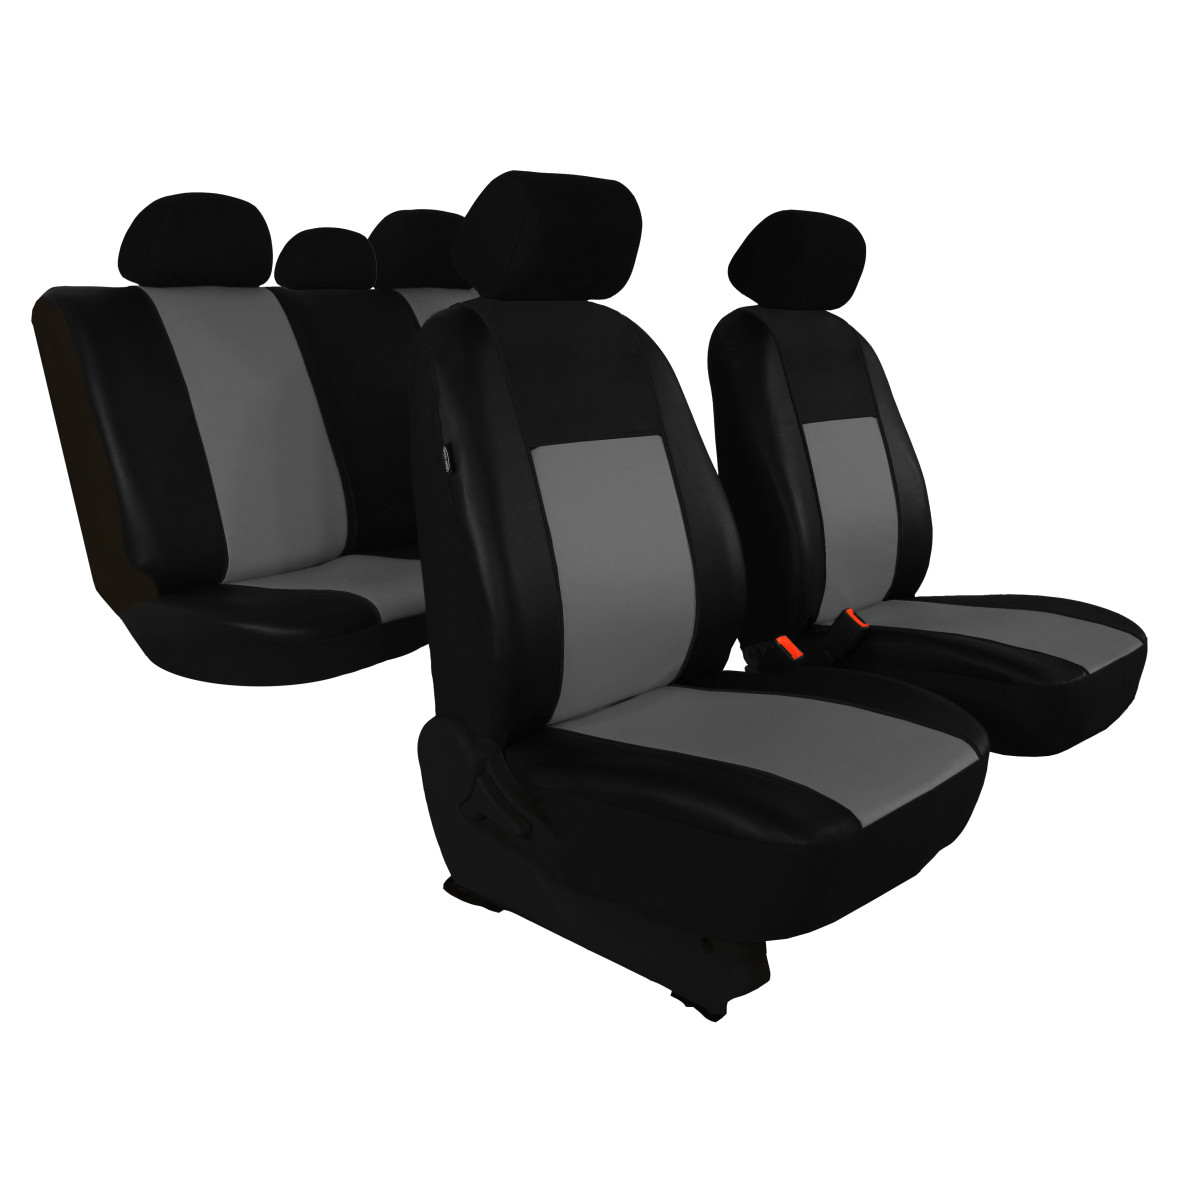 PKW Schonbezug Sitzbezug Sitzbezüge Auto-Sitzbezug für Mercedes Benz C -Klasse